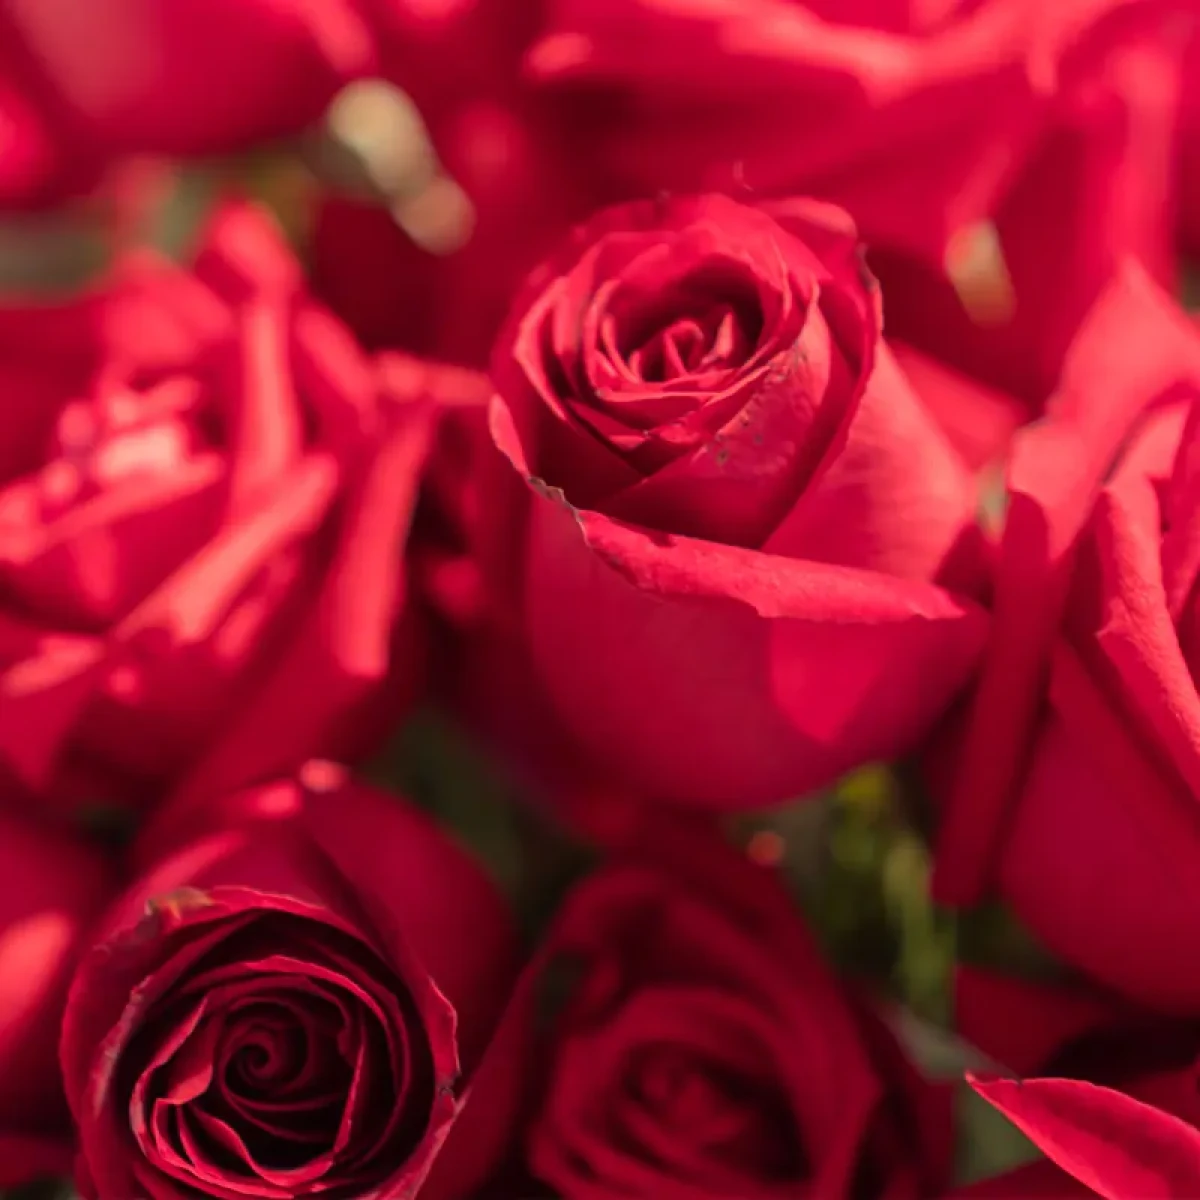 Rose Petals Fragrance